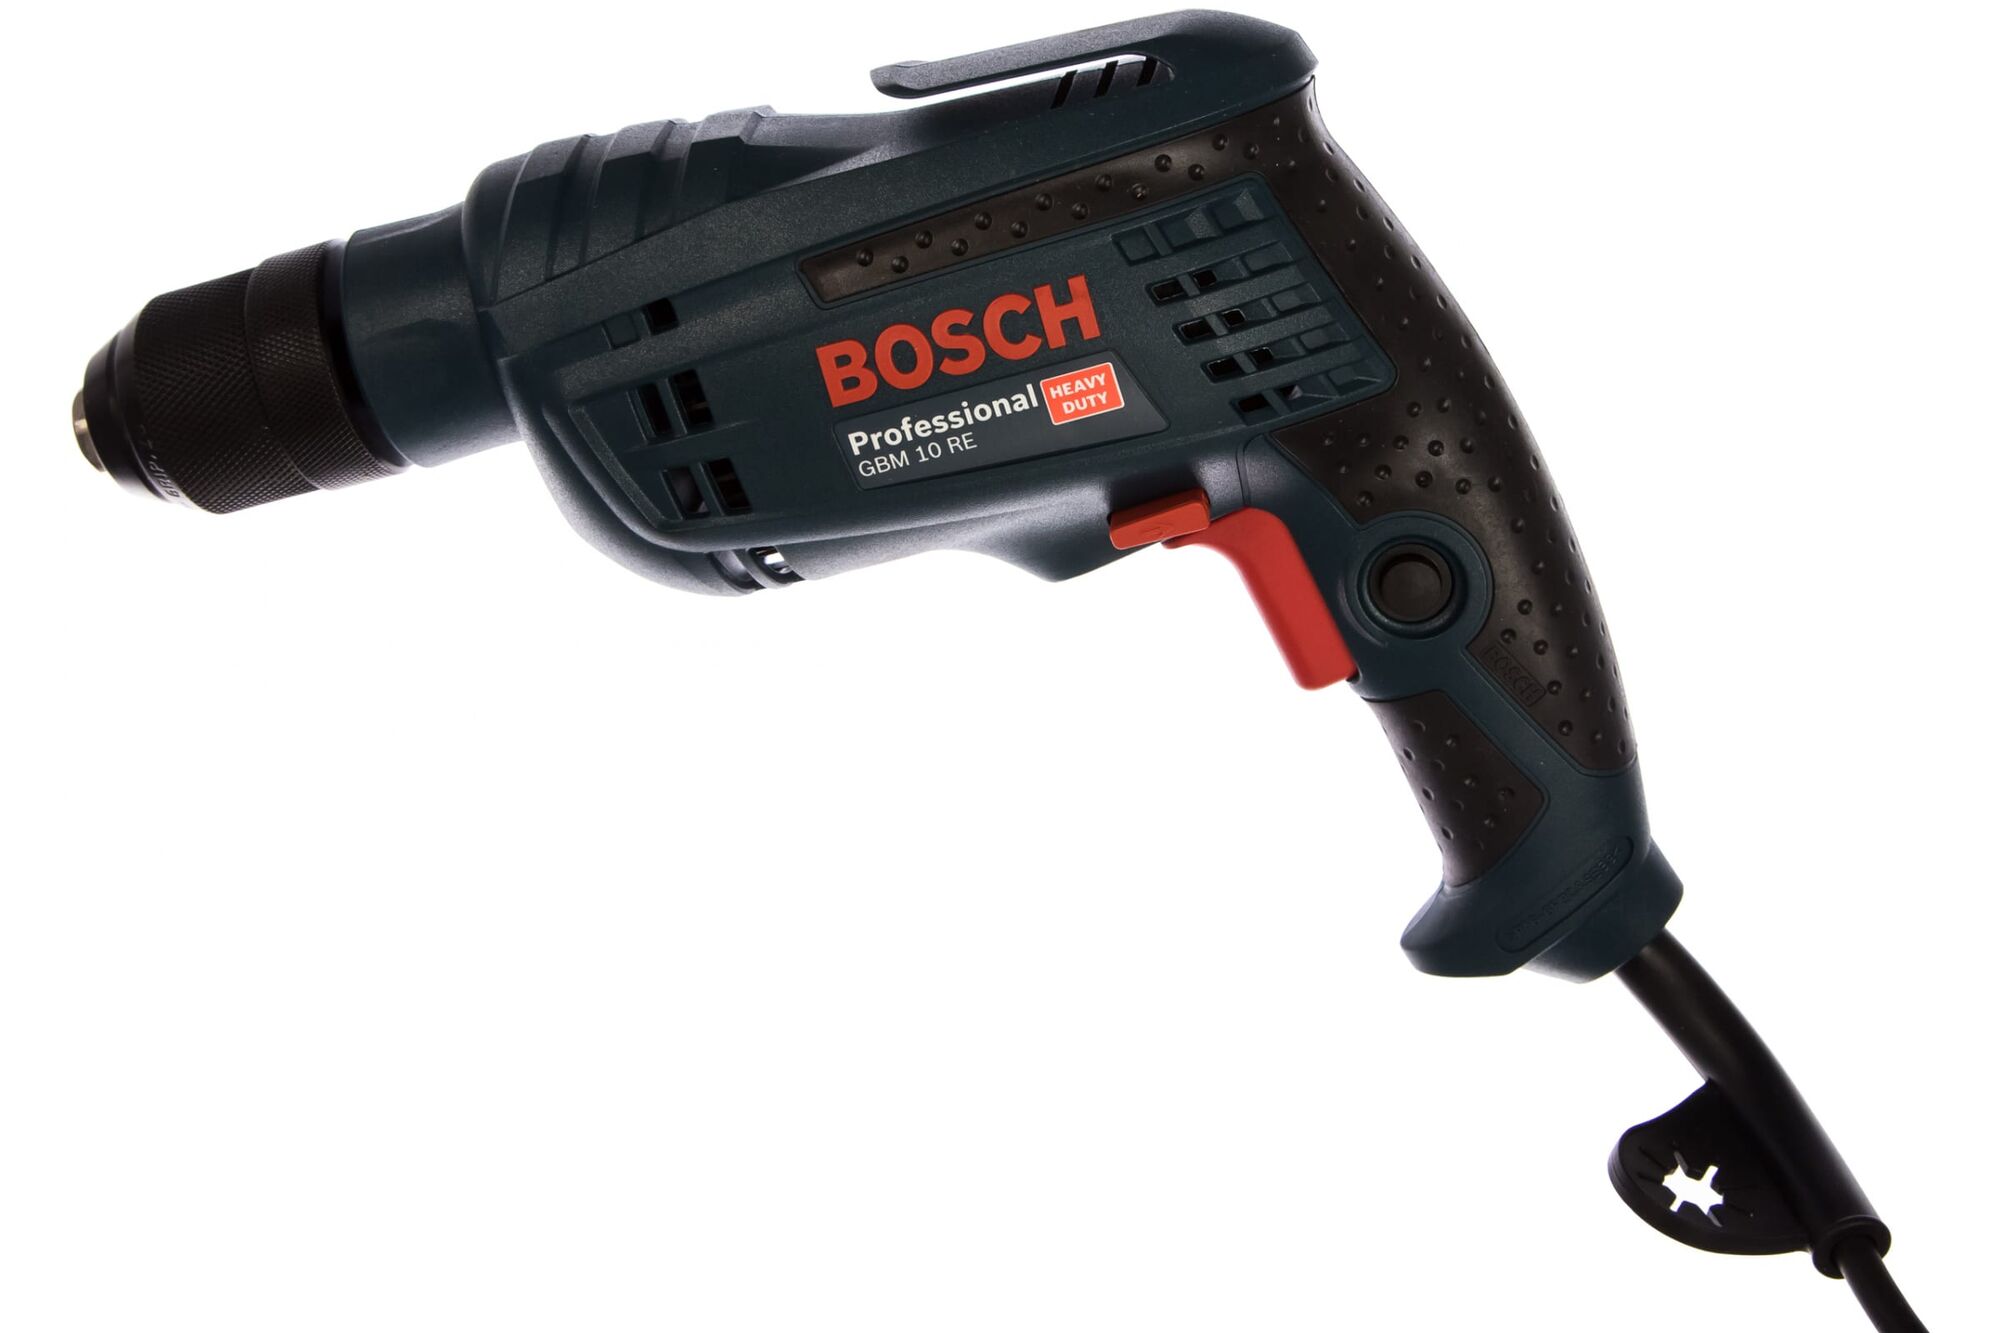 Дрель Bosch GBM 10 RE 0.601.473.600